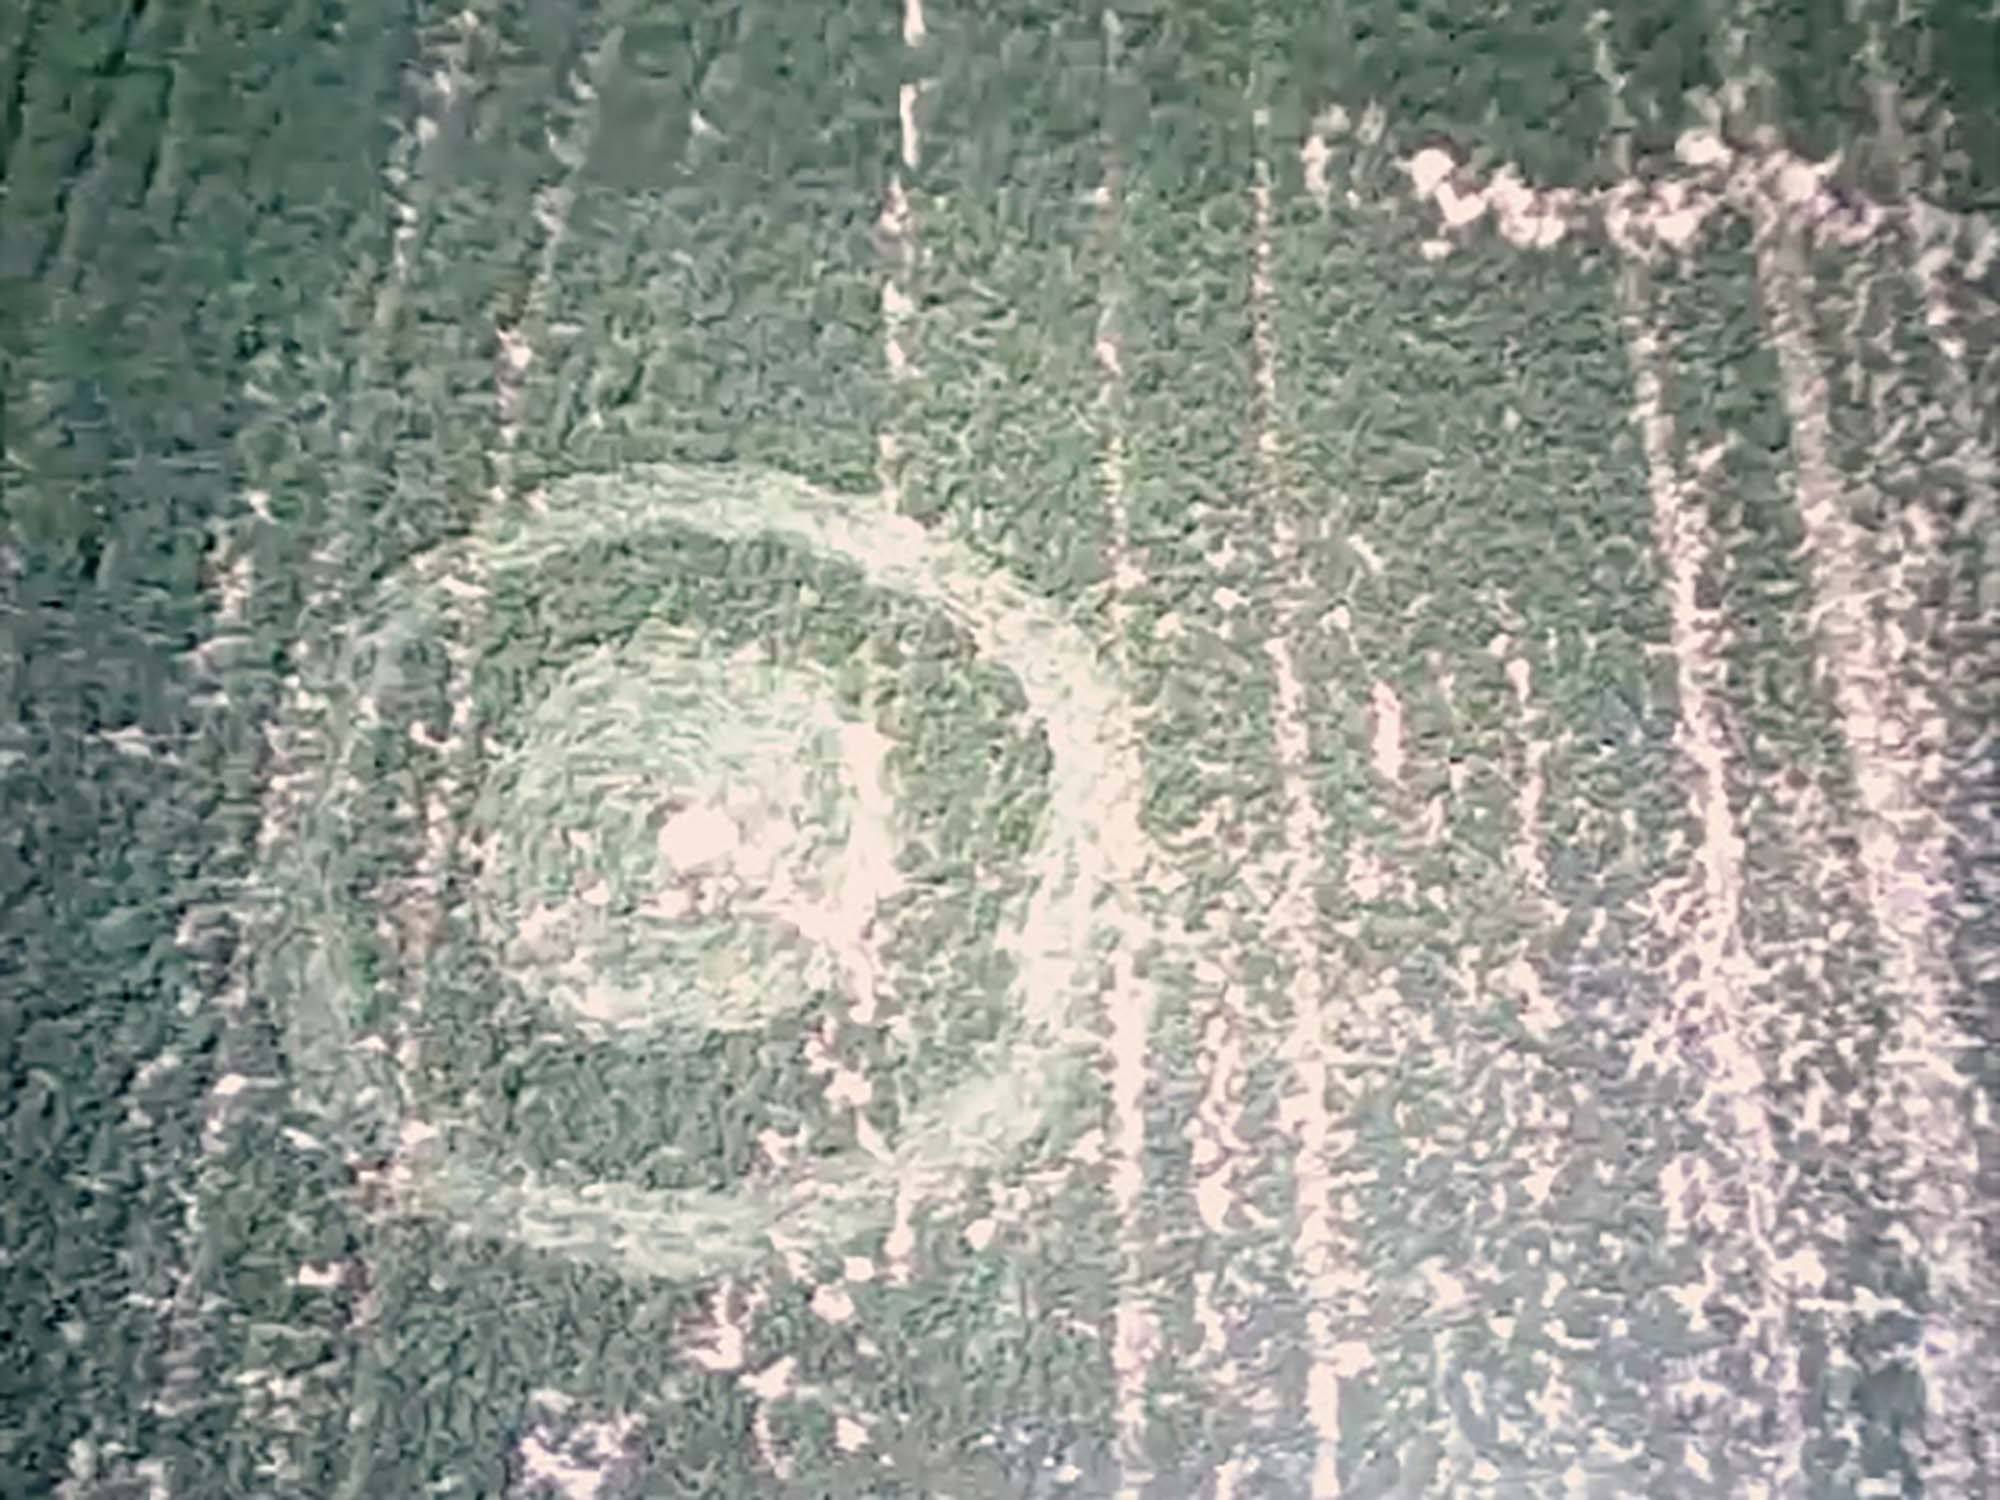 An image of a crop circle